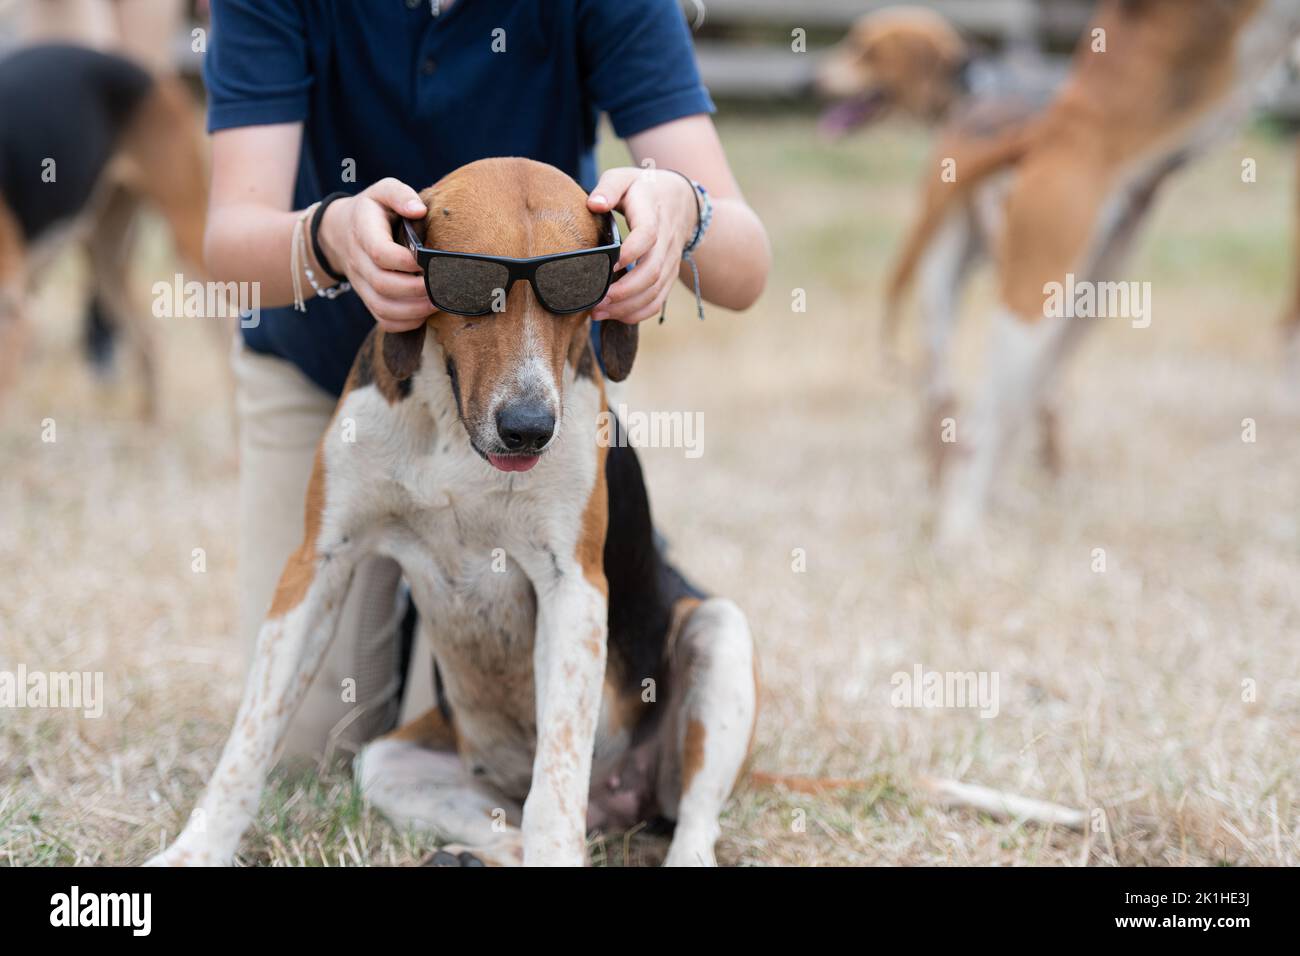 Fox hound wearing sunglasses Stock Photo